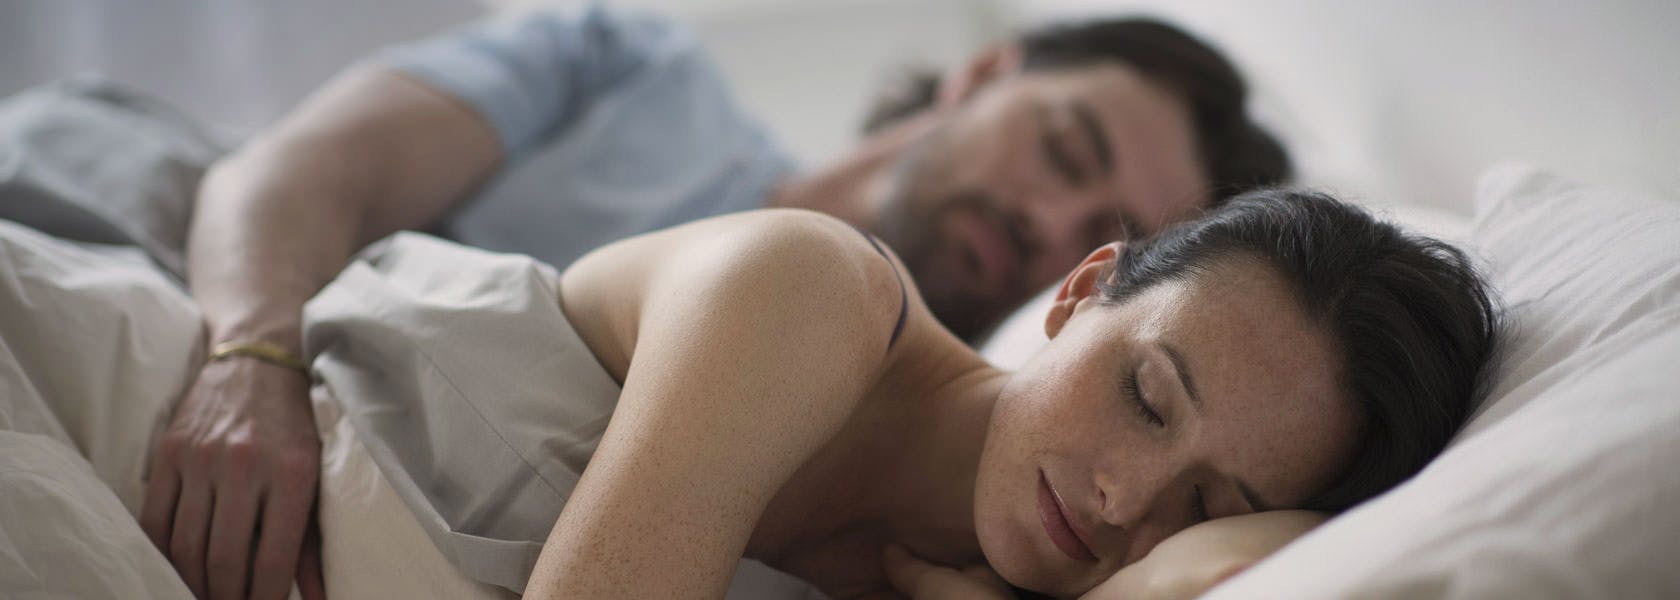 Bedre søvn bekjemper influensa og forkjølelse